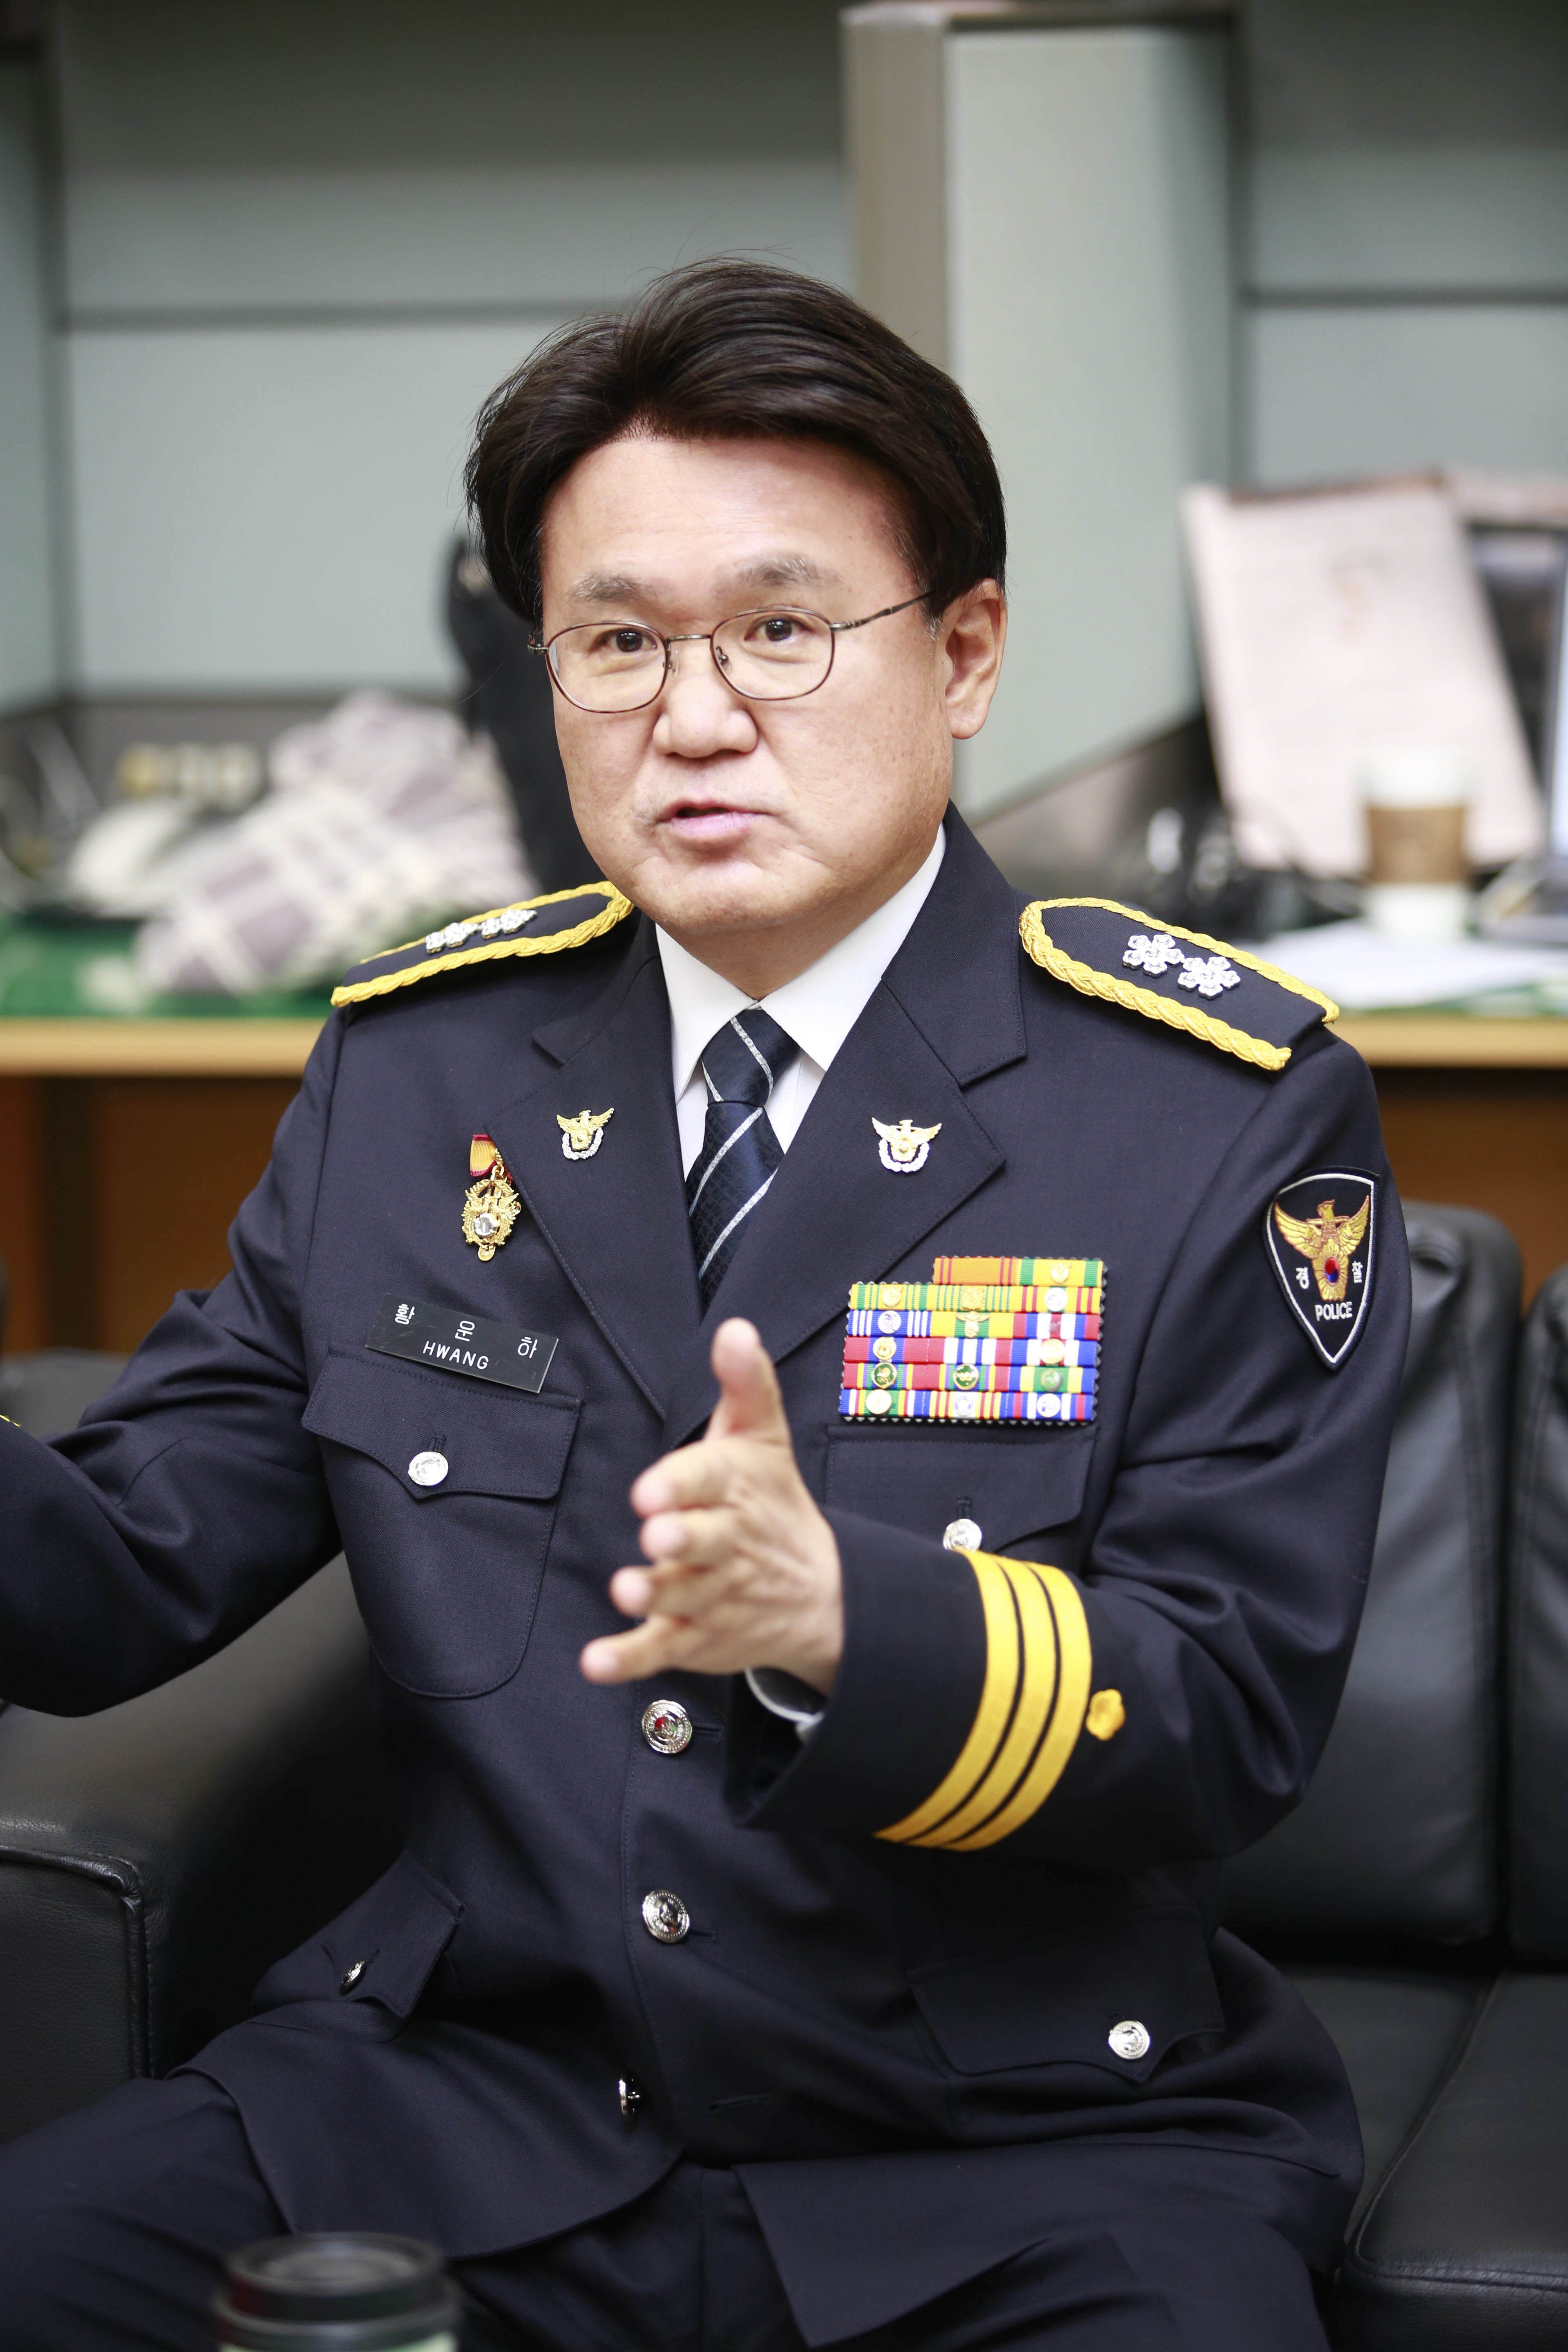 명예퇴직이 일단 막힌 황운하 대전경찰청장은 의원면직 수리를 확신하고 있다. 대전지방경찰청 제공